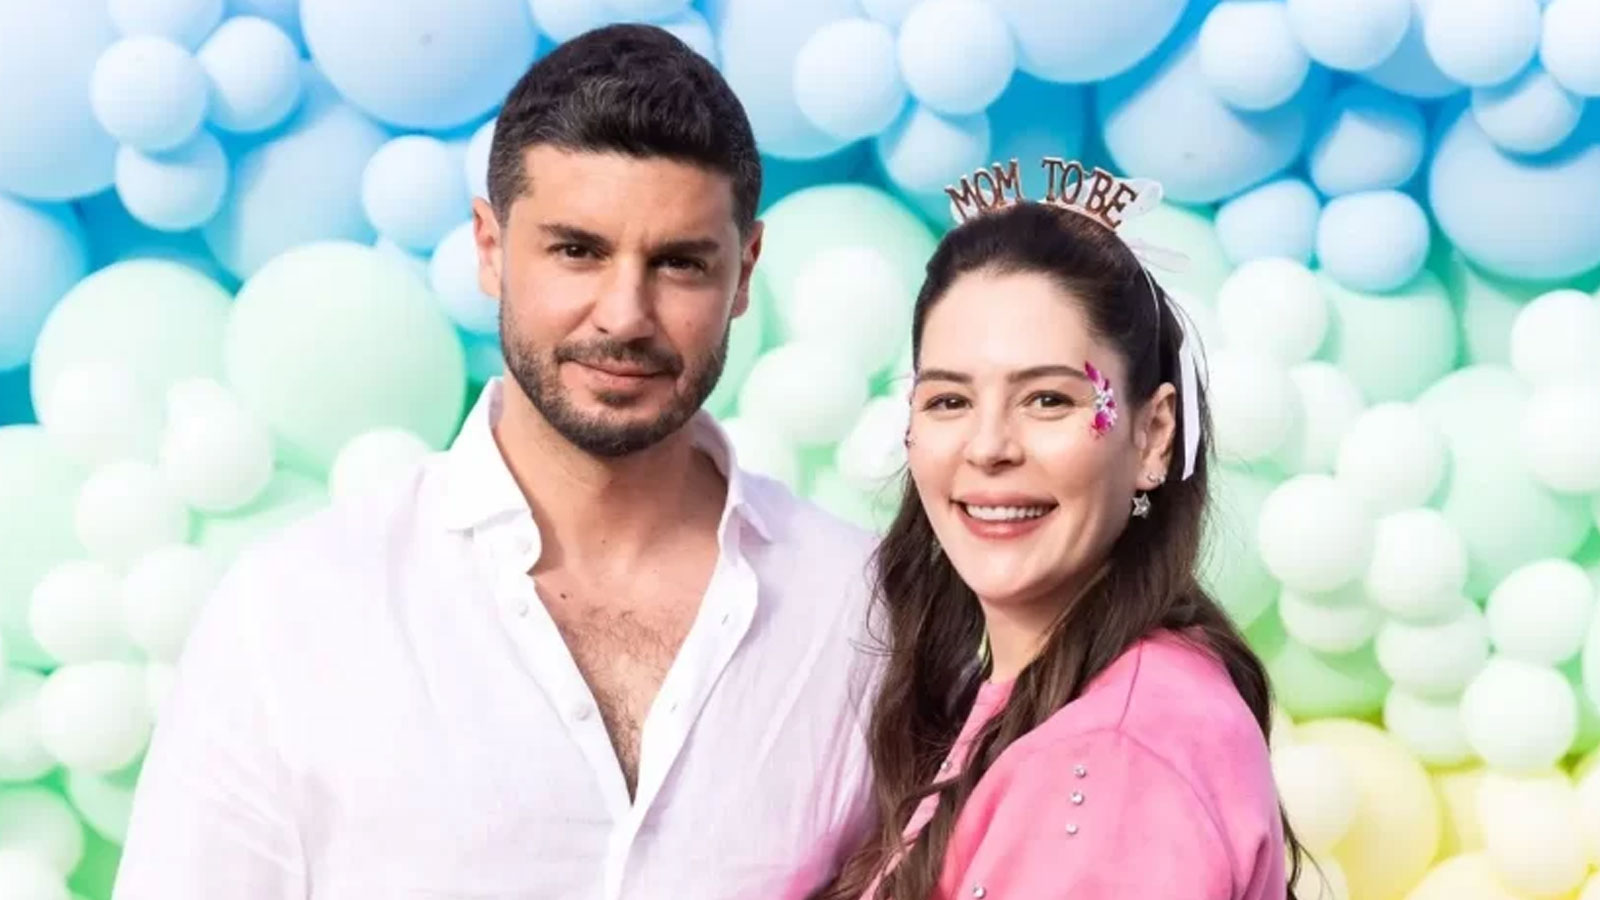 Mutluluktan uçuyorlar! Yıldız Çağrı Atiksoy ve Berk Oktay çiftinden baby shower partisi